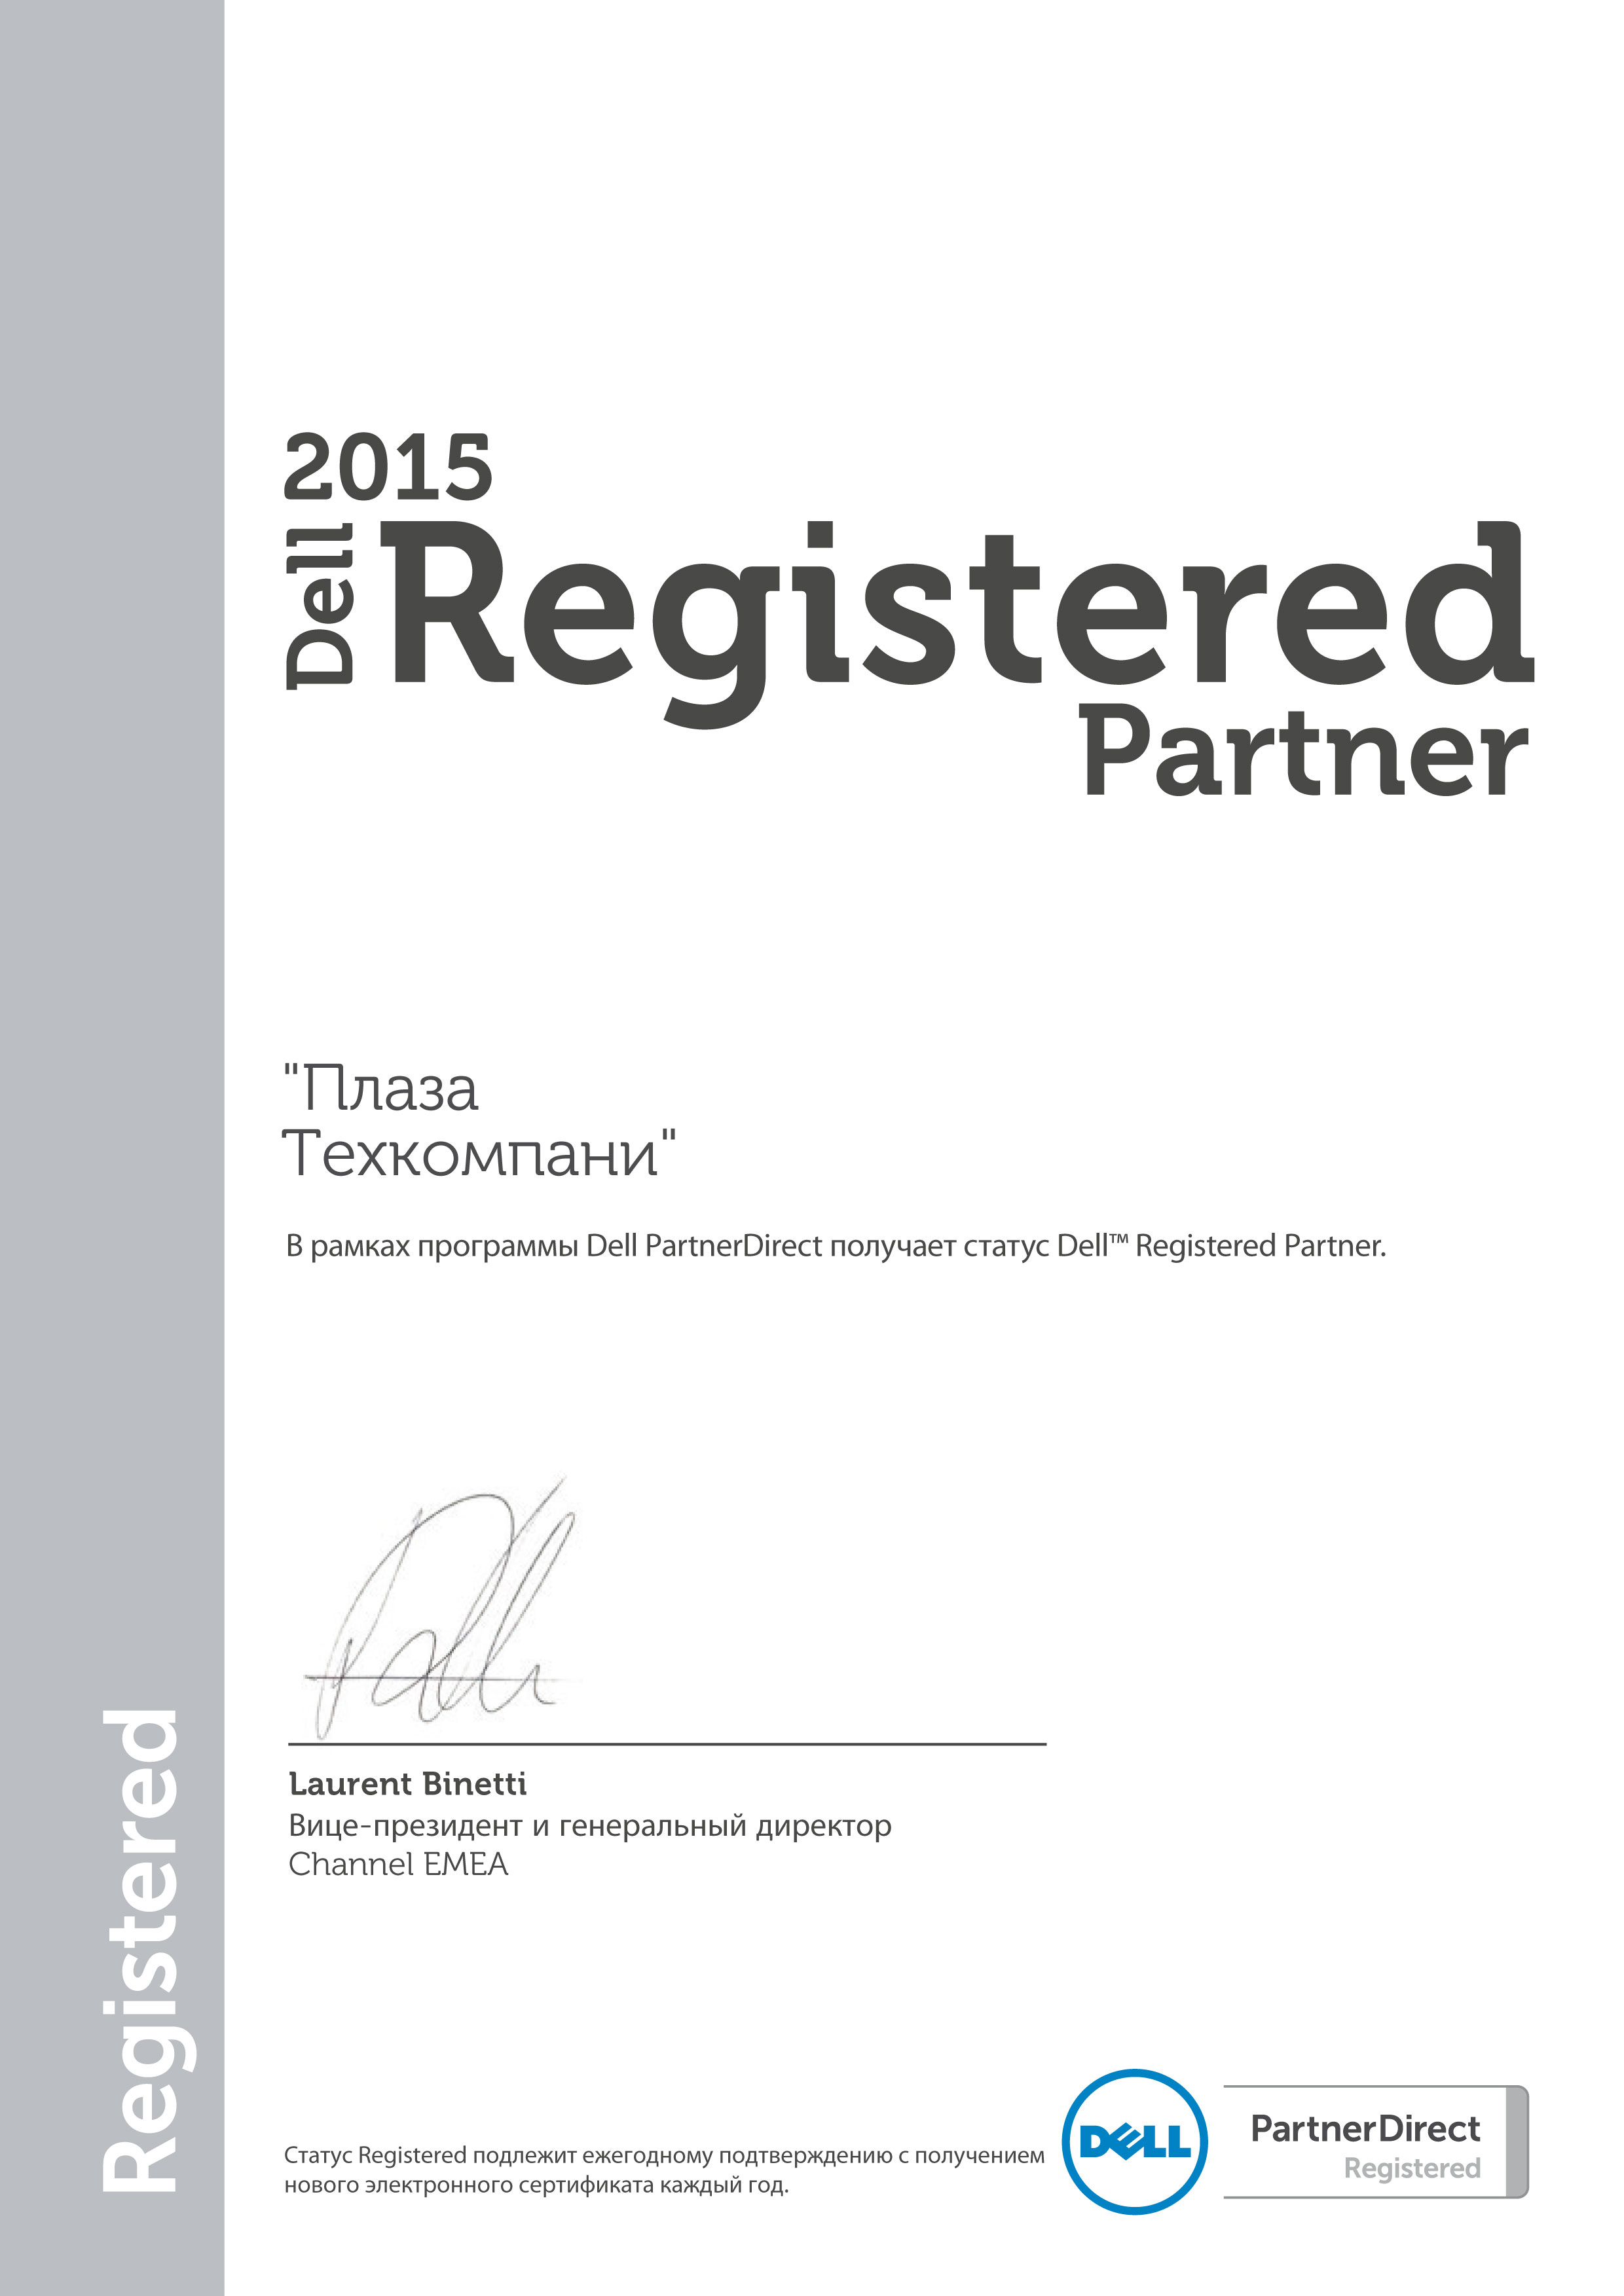 Системный интегратор | Системный интегратор Dell Partner Registered 2010 2011 2012 2013 2014 2015 2016 2017 сертификат Системные интеграторыа  делл